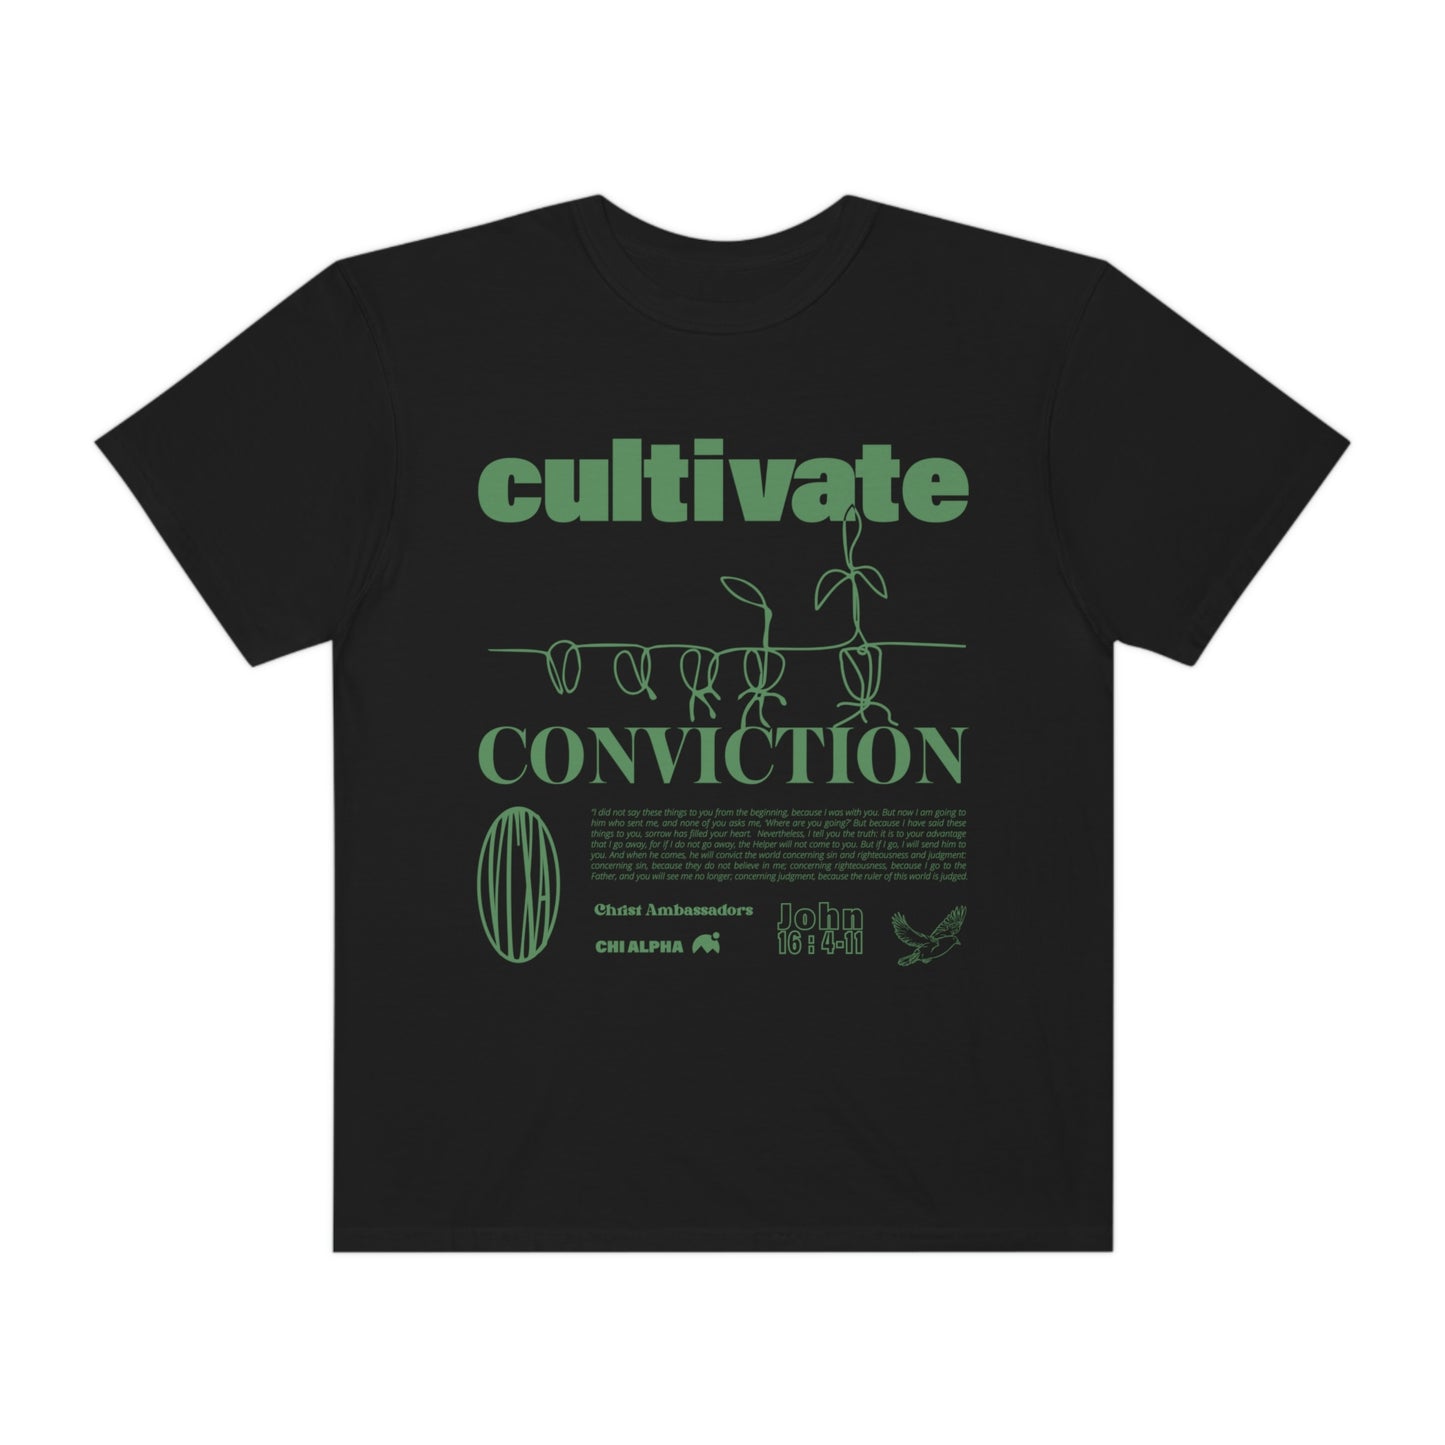 Cultivate Conviction